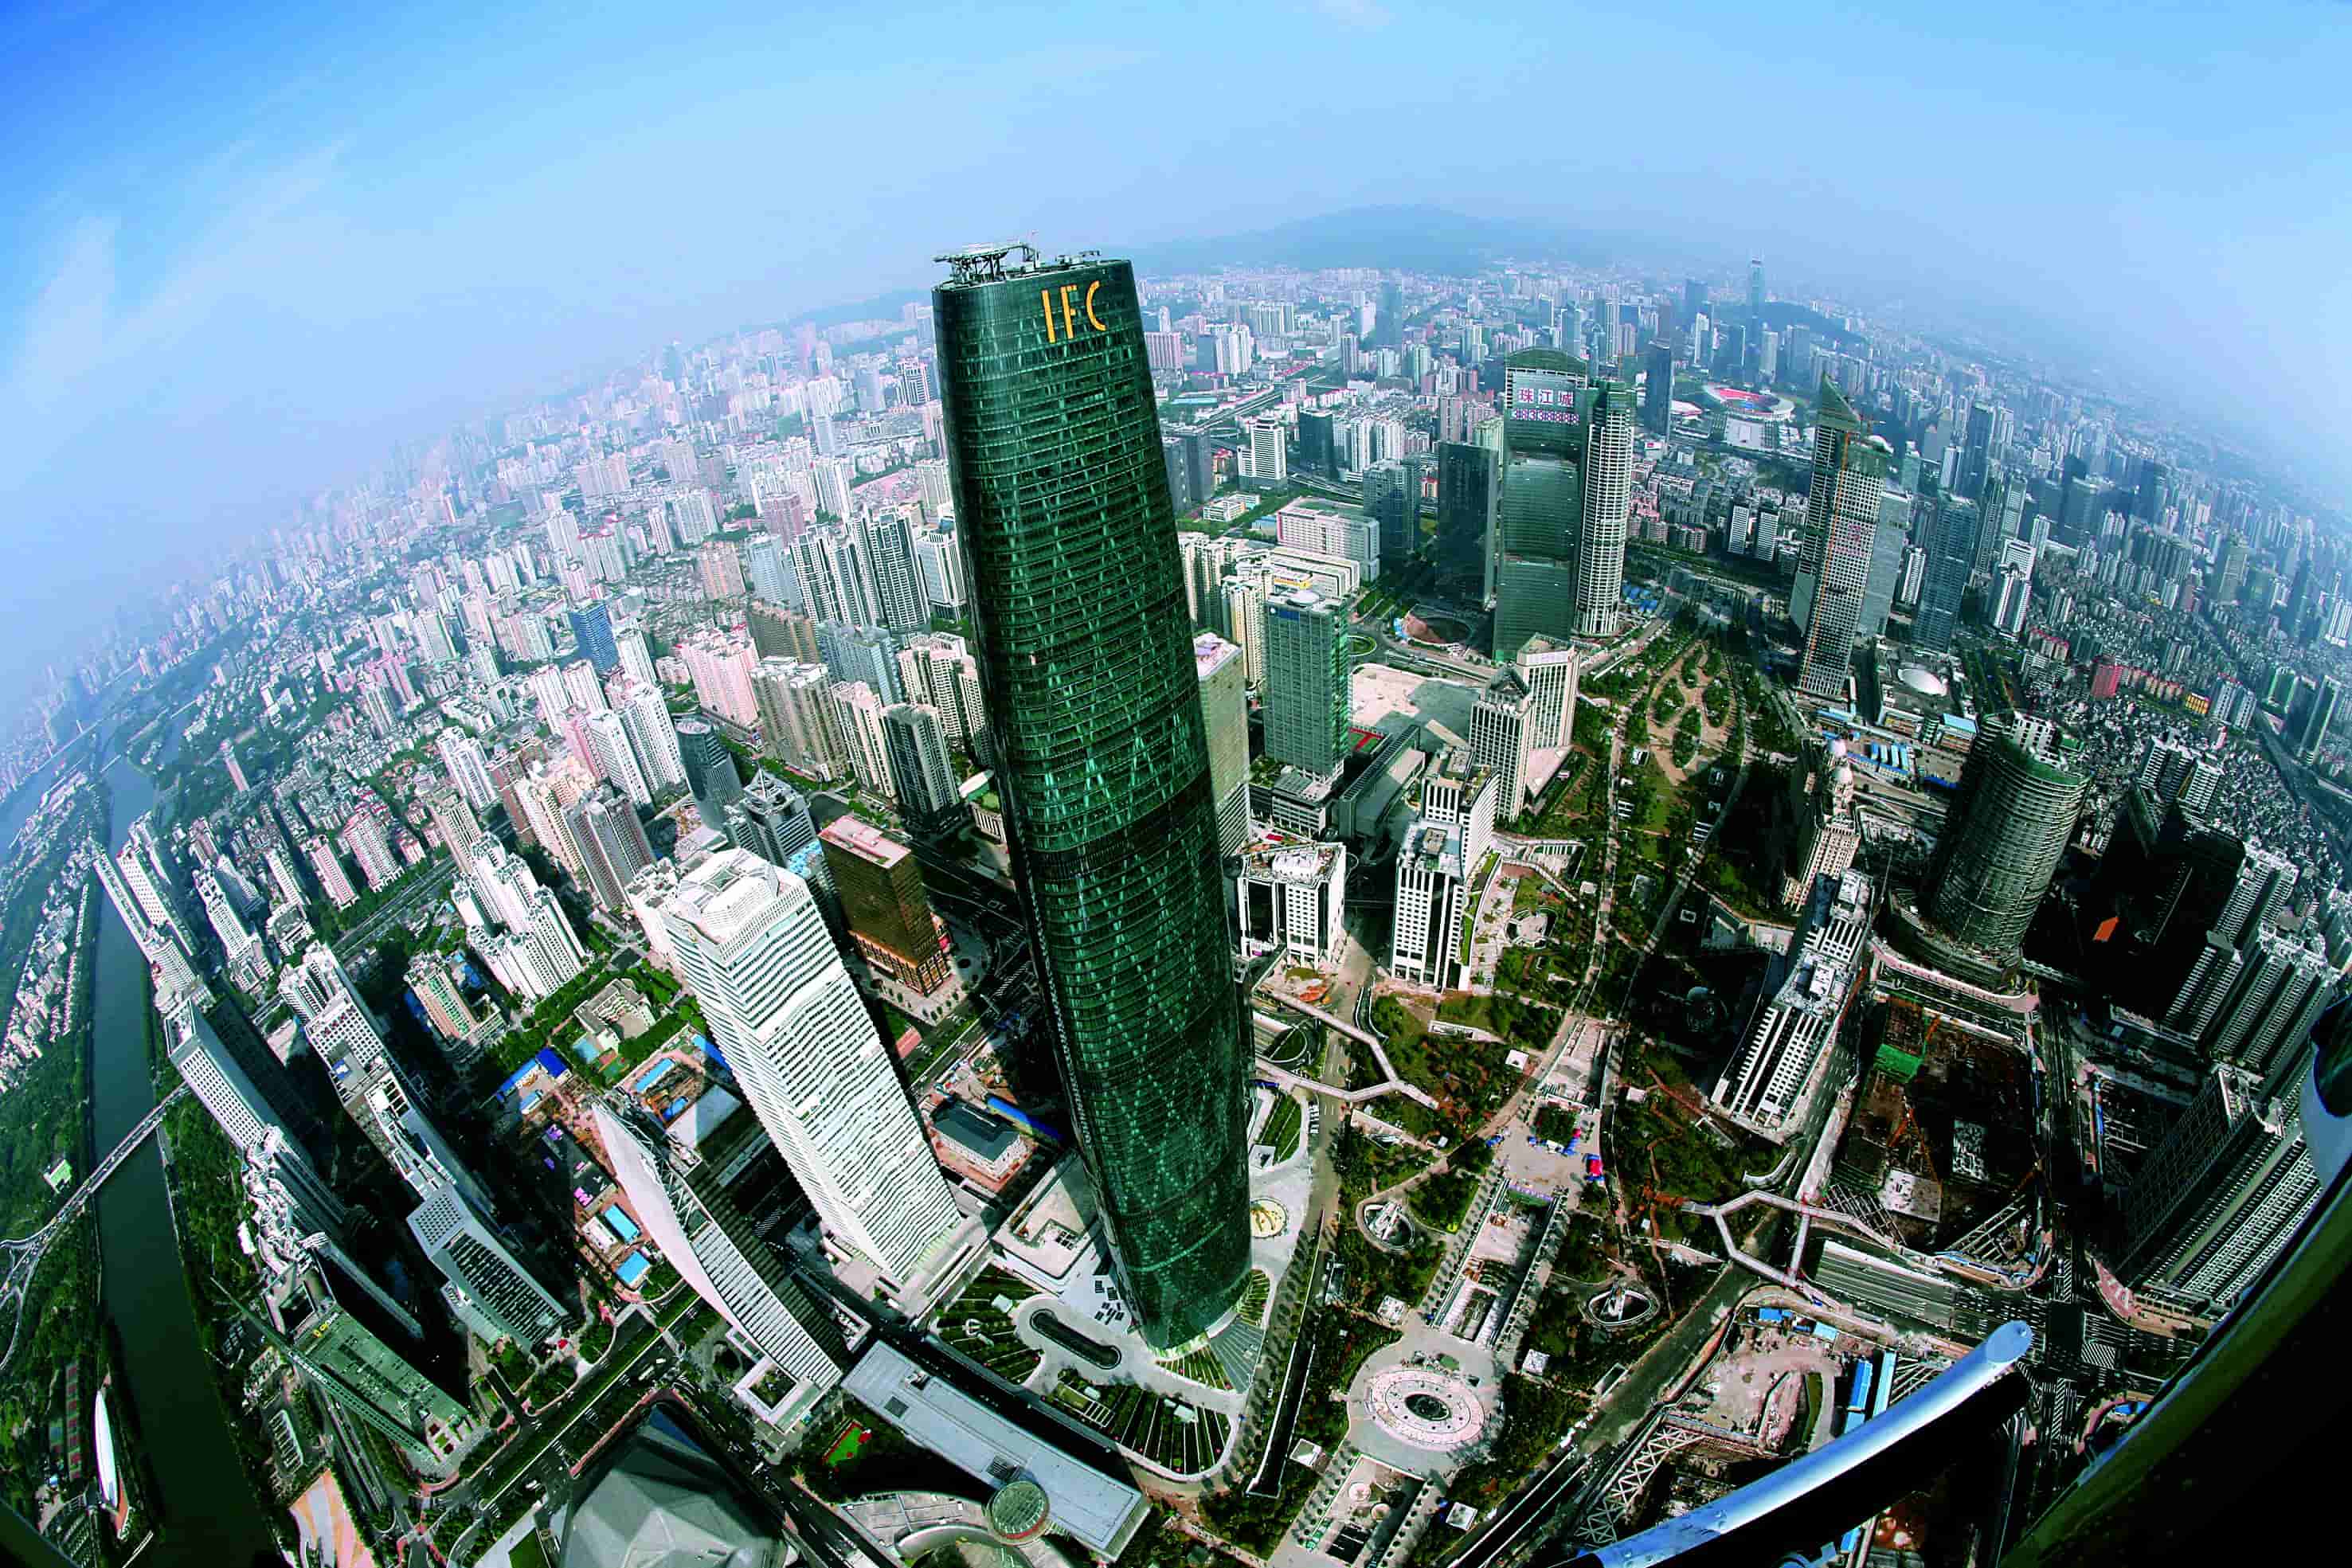 Guangzhou International Finance Center (Guangzhou West Tower) 